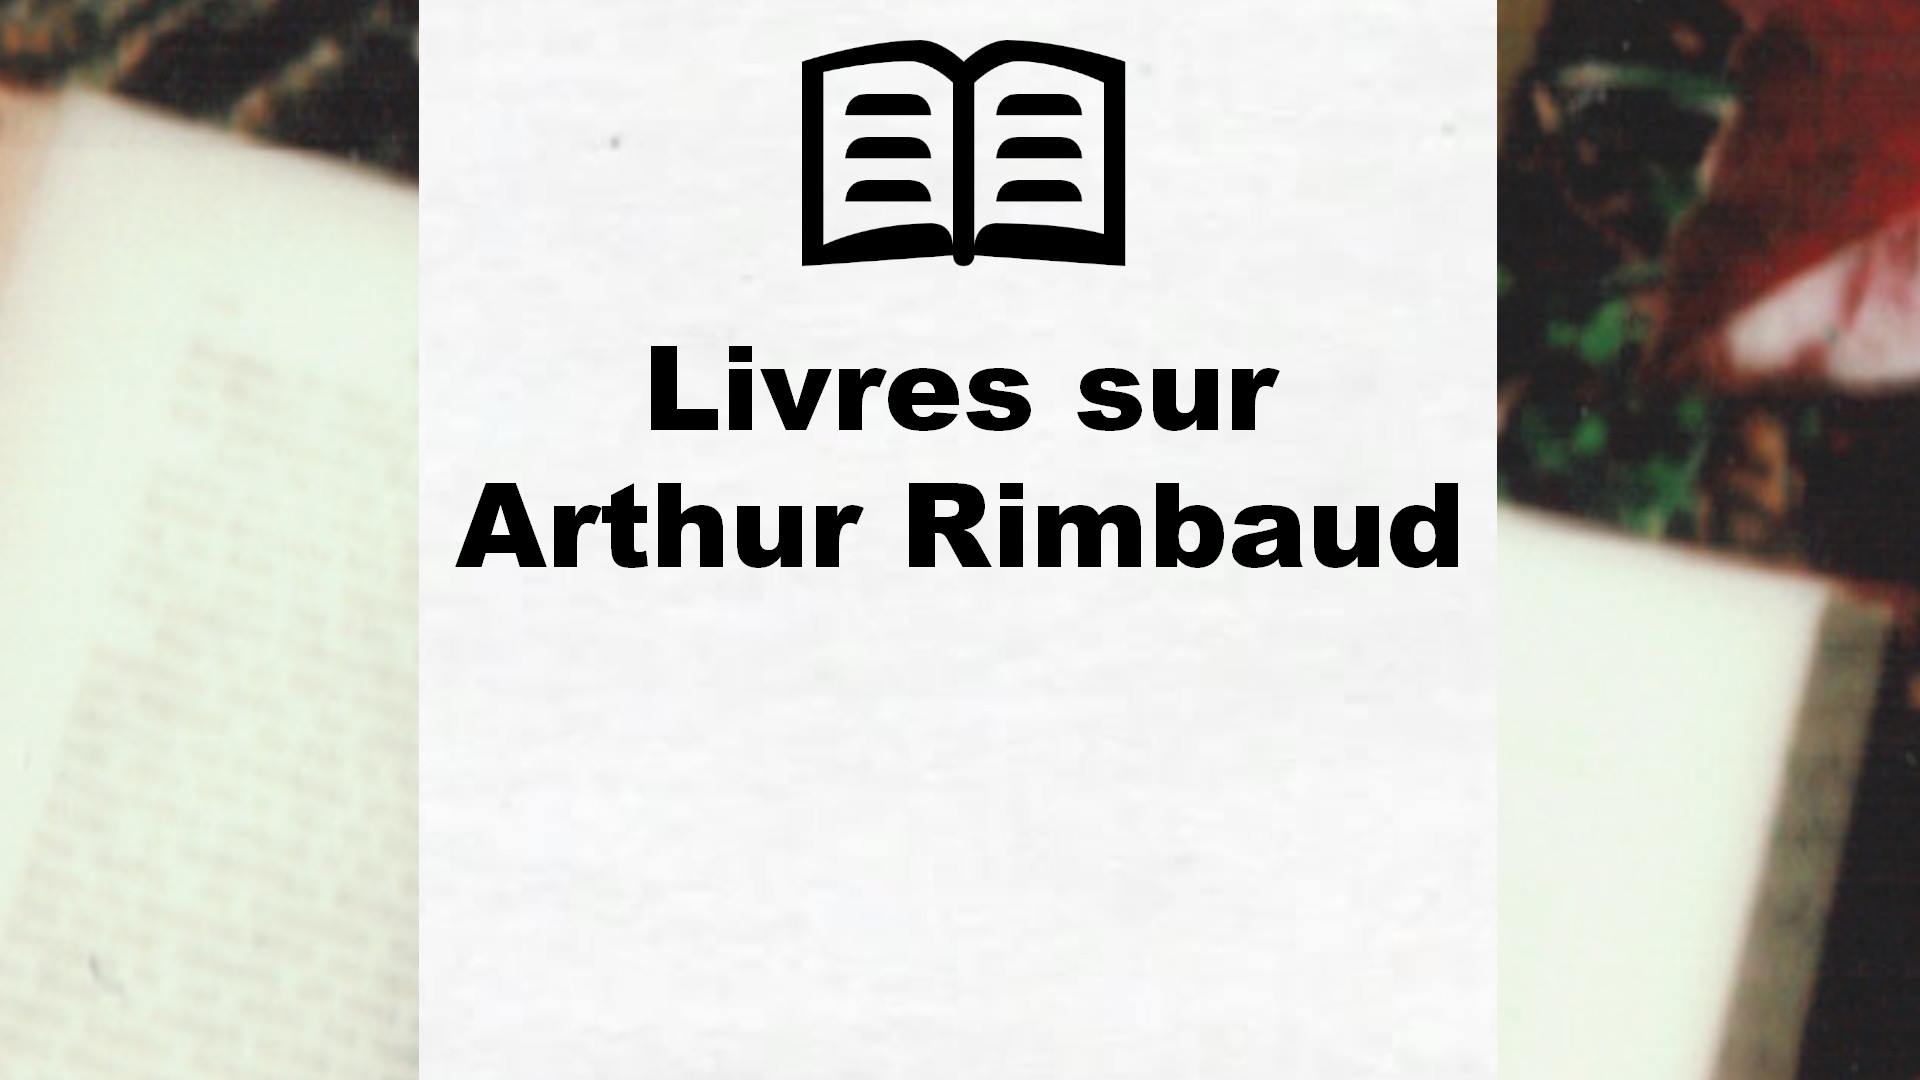 Livres sur Arthur Rimbaud